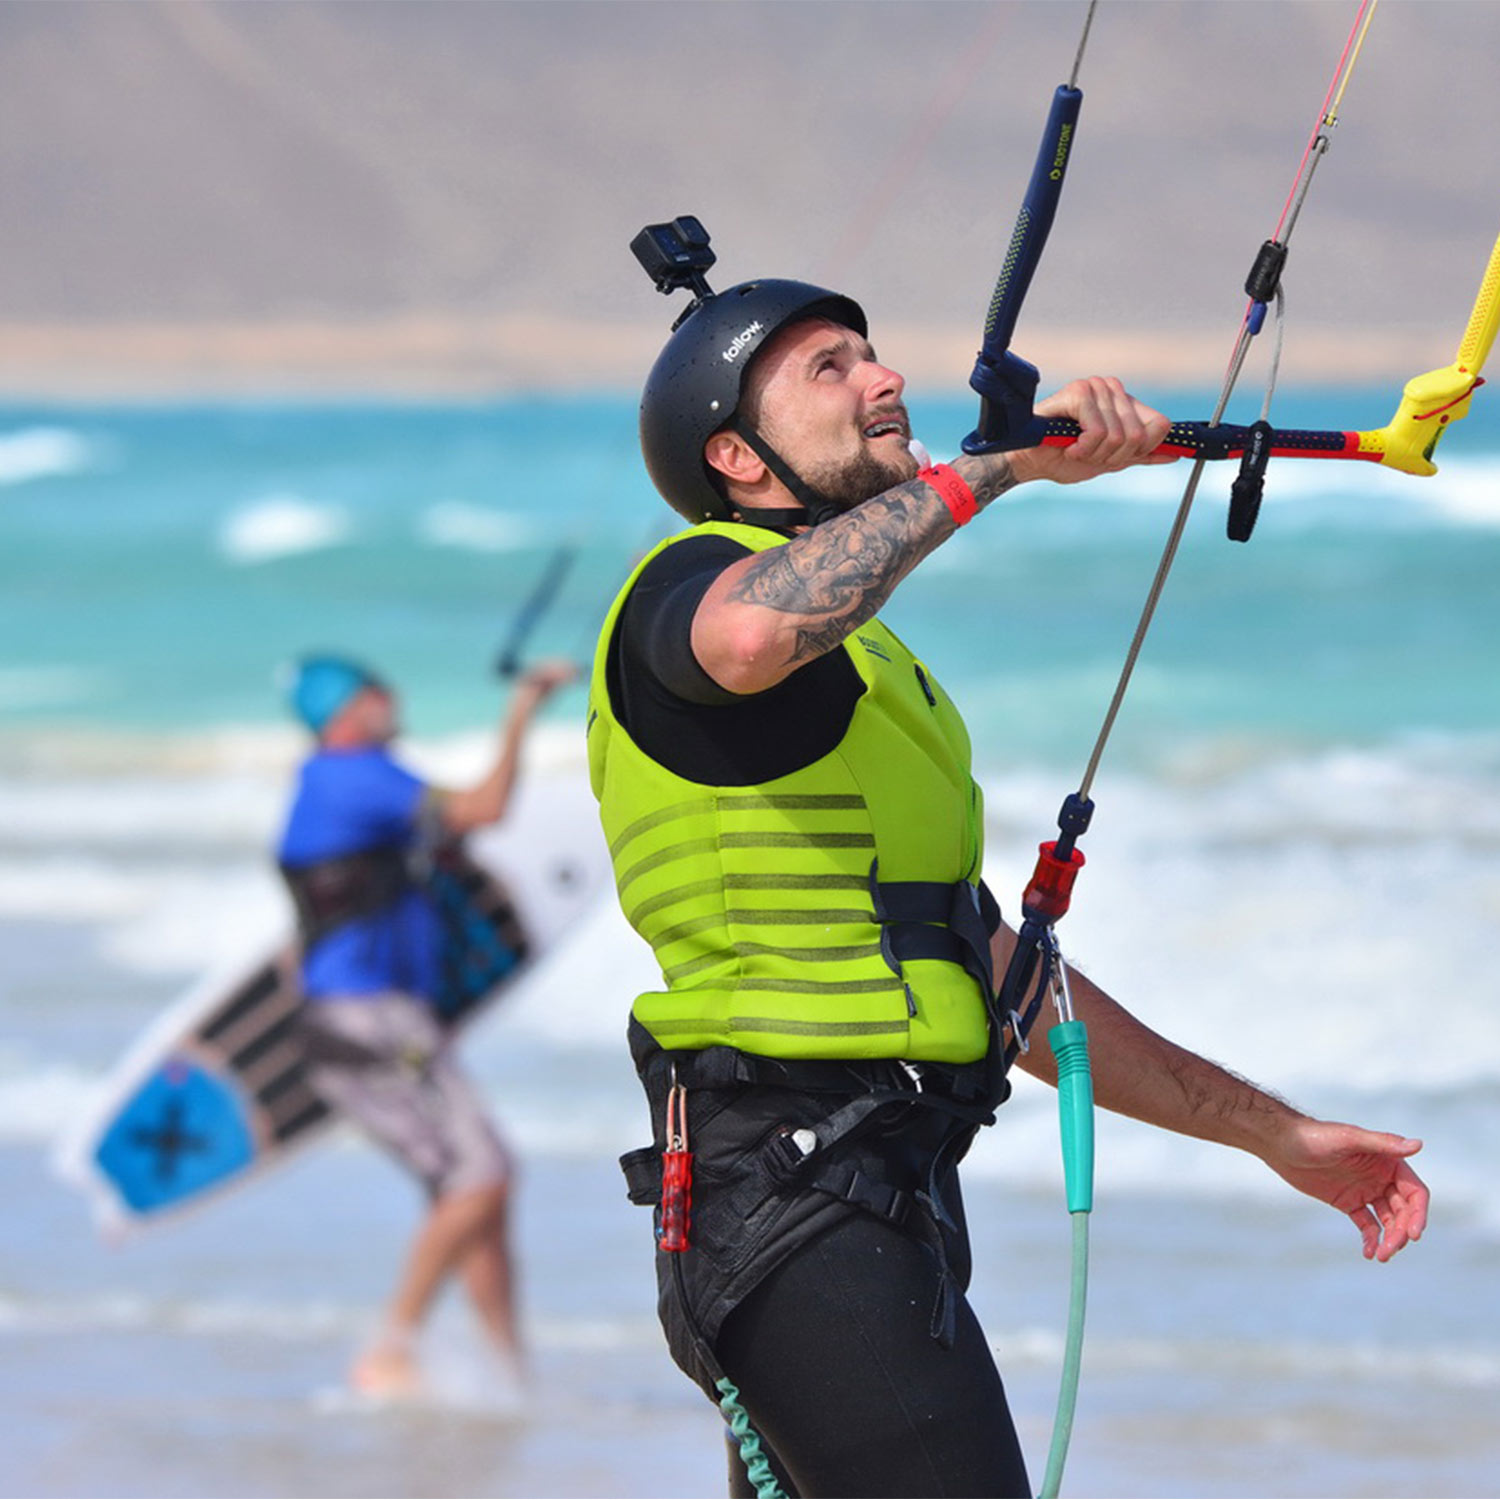 élève en kitesurf qui entre dans l'eau avec le kite à la main